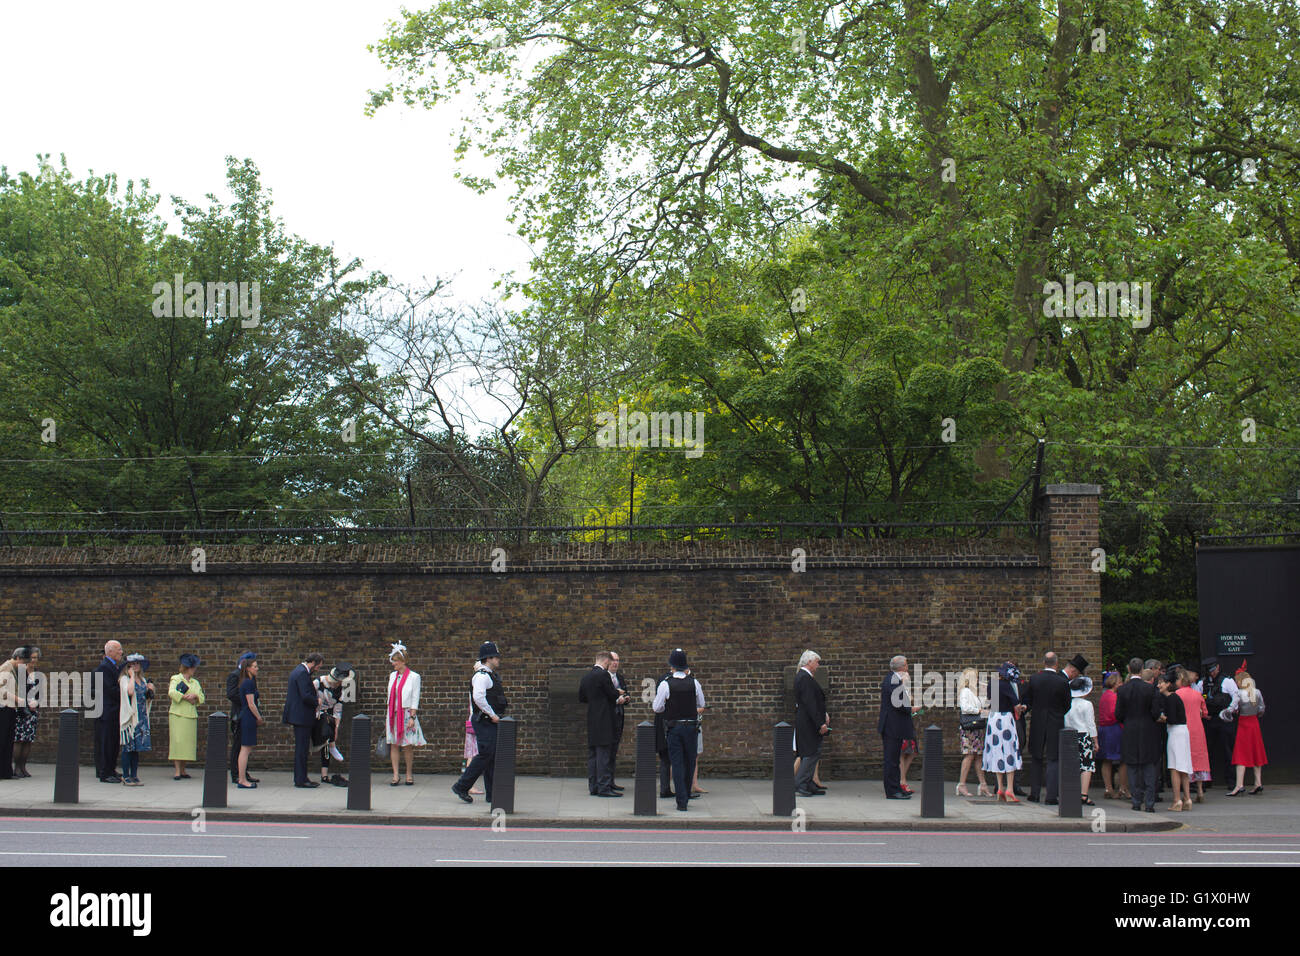 Les participants à l'assemblée annuelle de la Famille Royal Garden Party à l'extérieur de la file d'entrée de Buckingham Palace, Londres, UK Banque D'Images